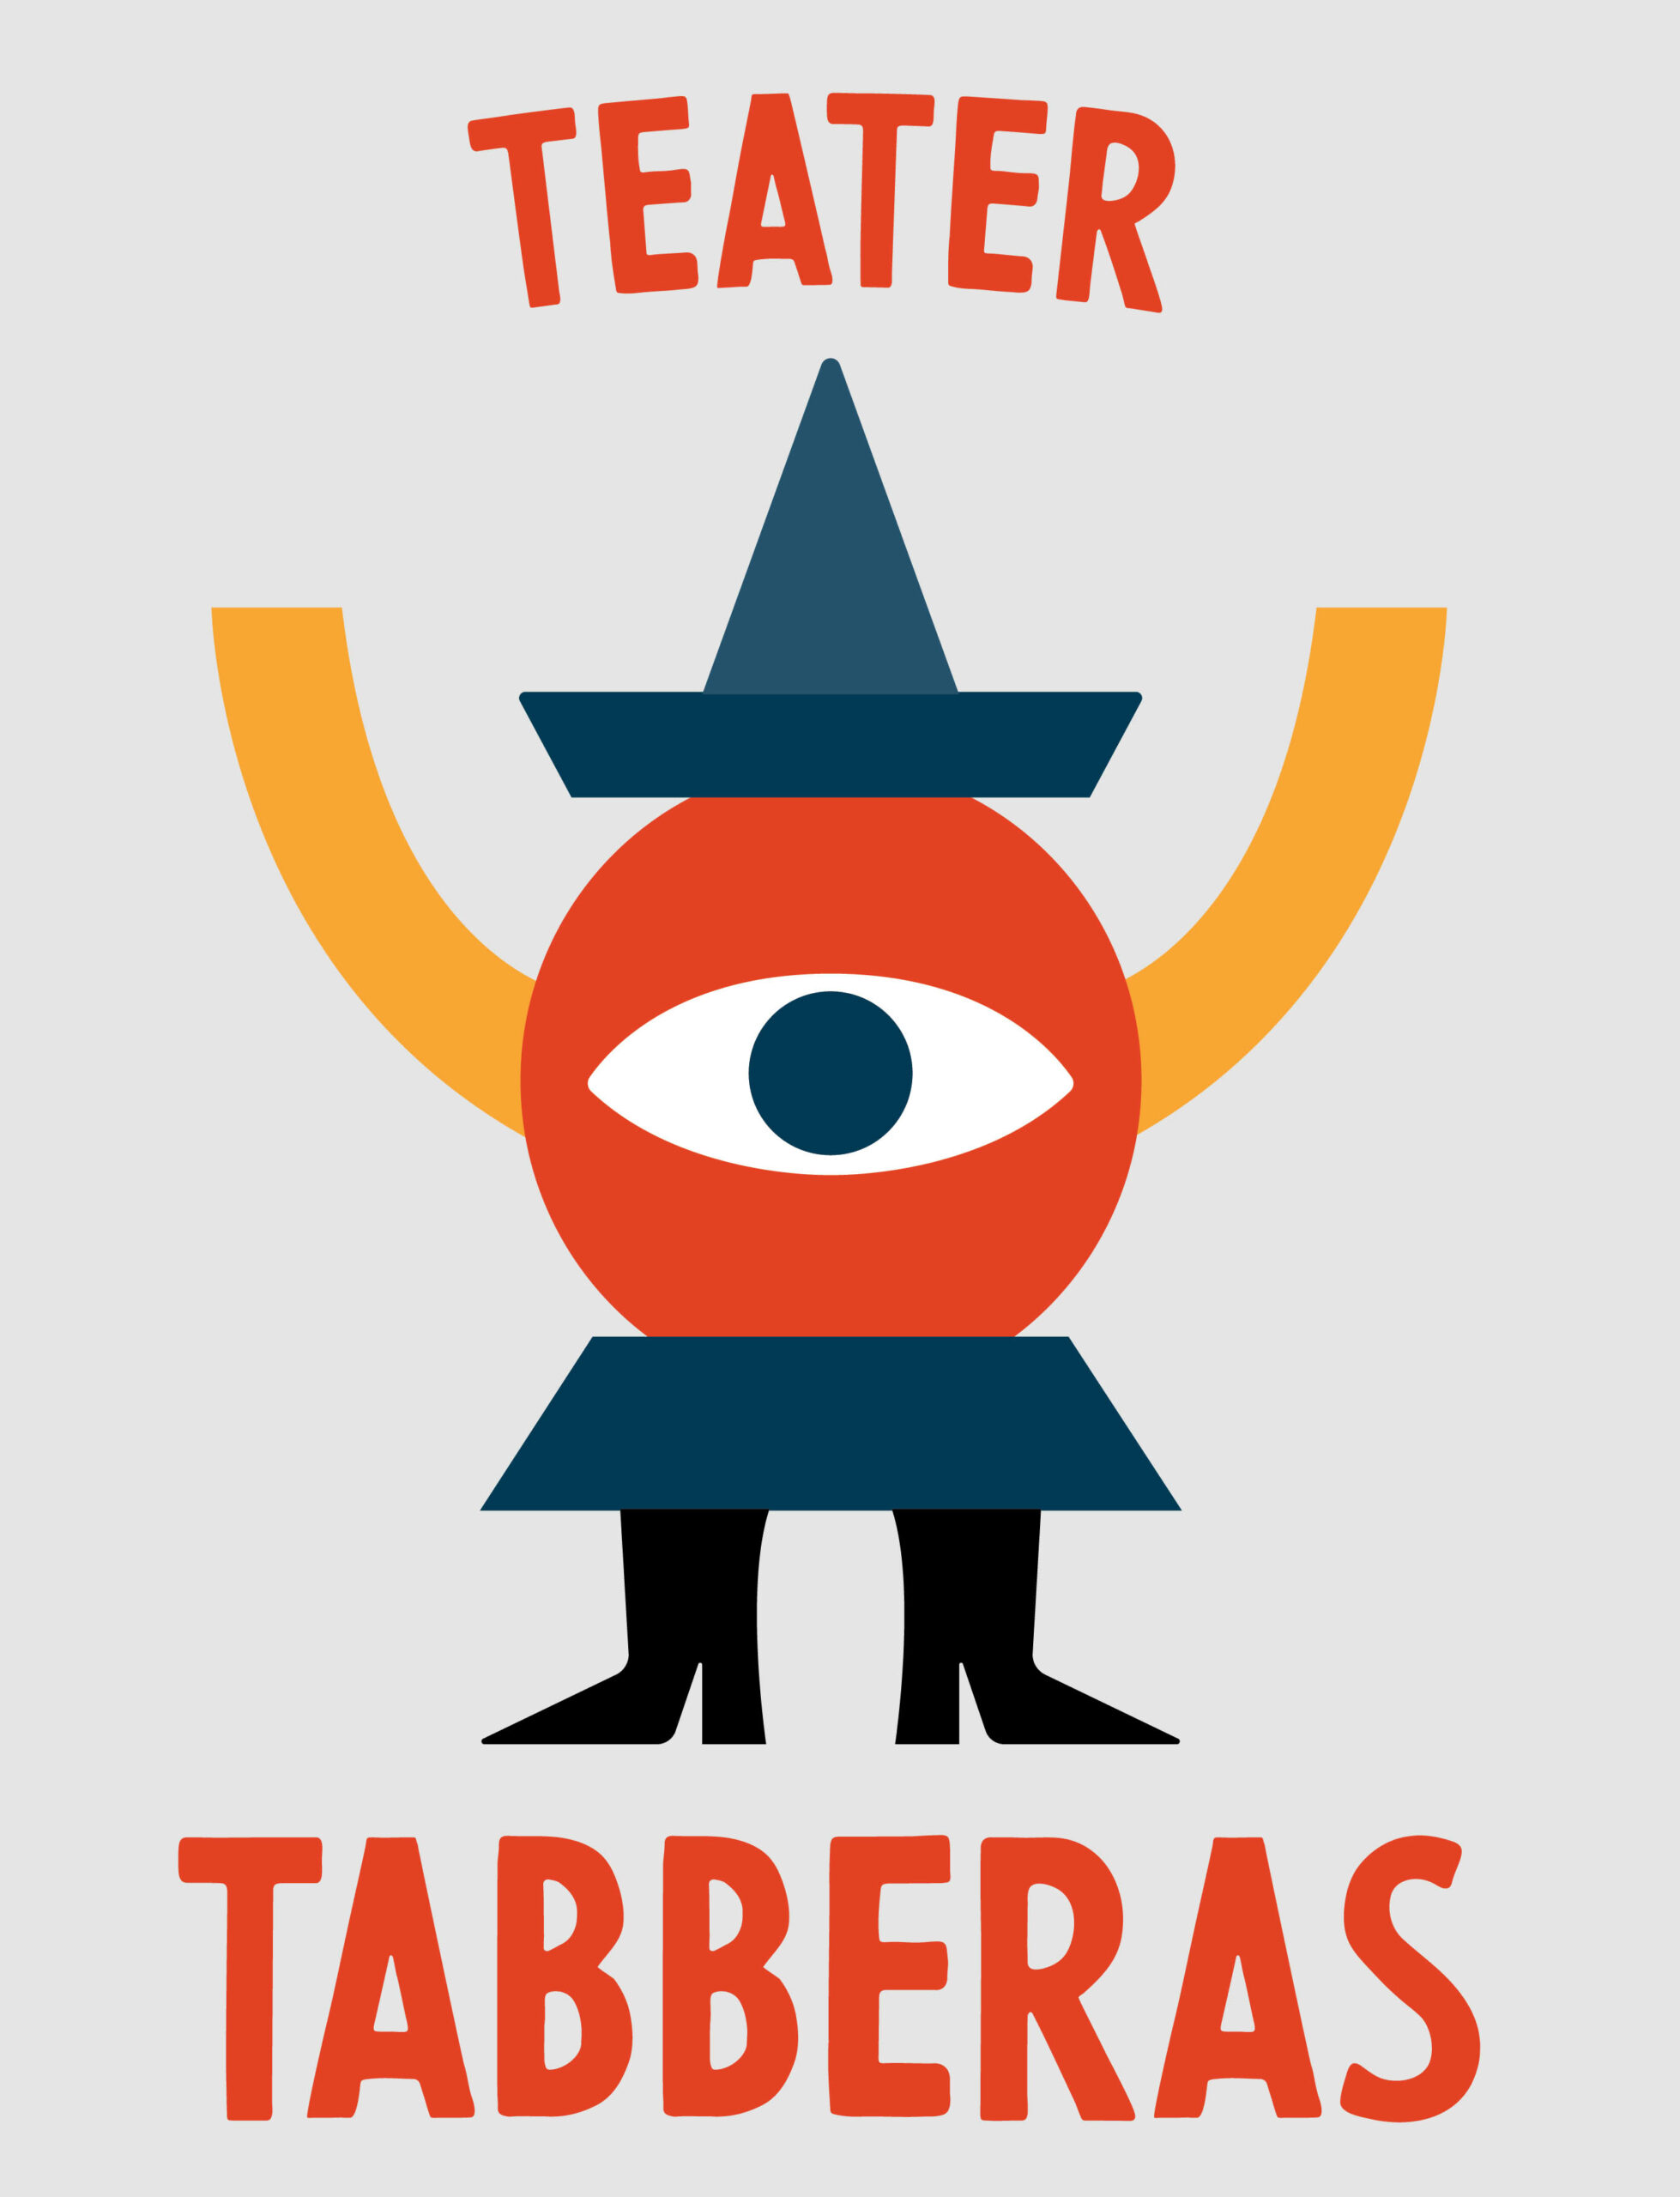 Teater Tabberas Logotype